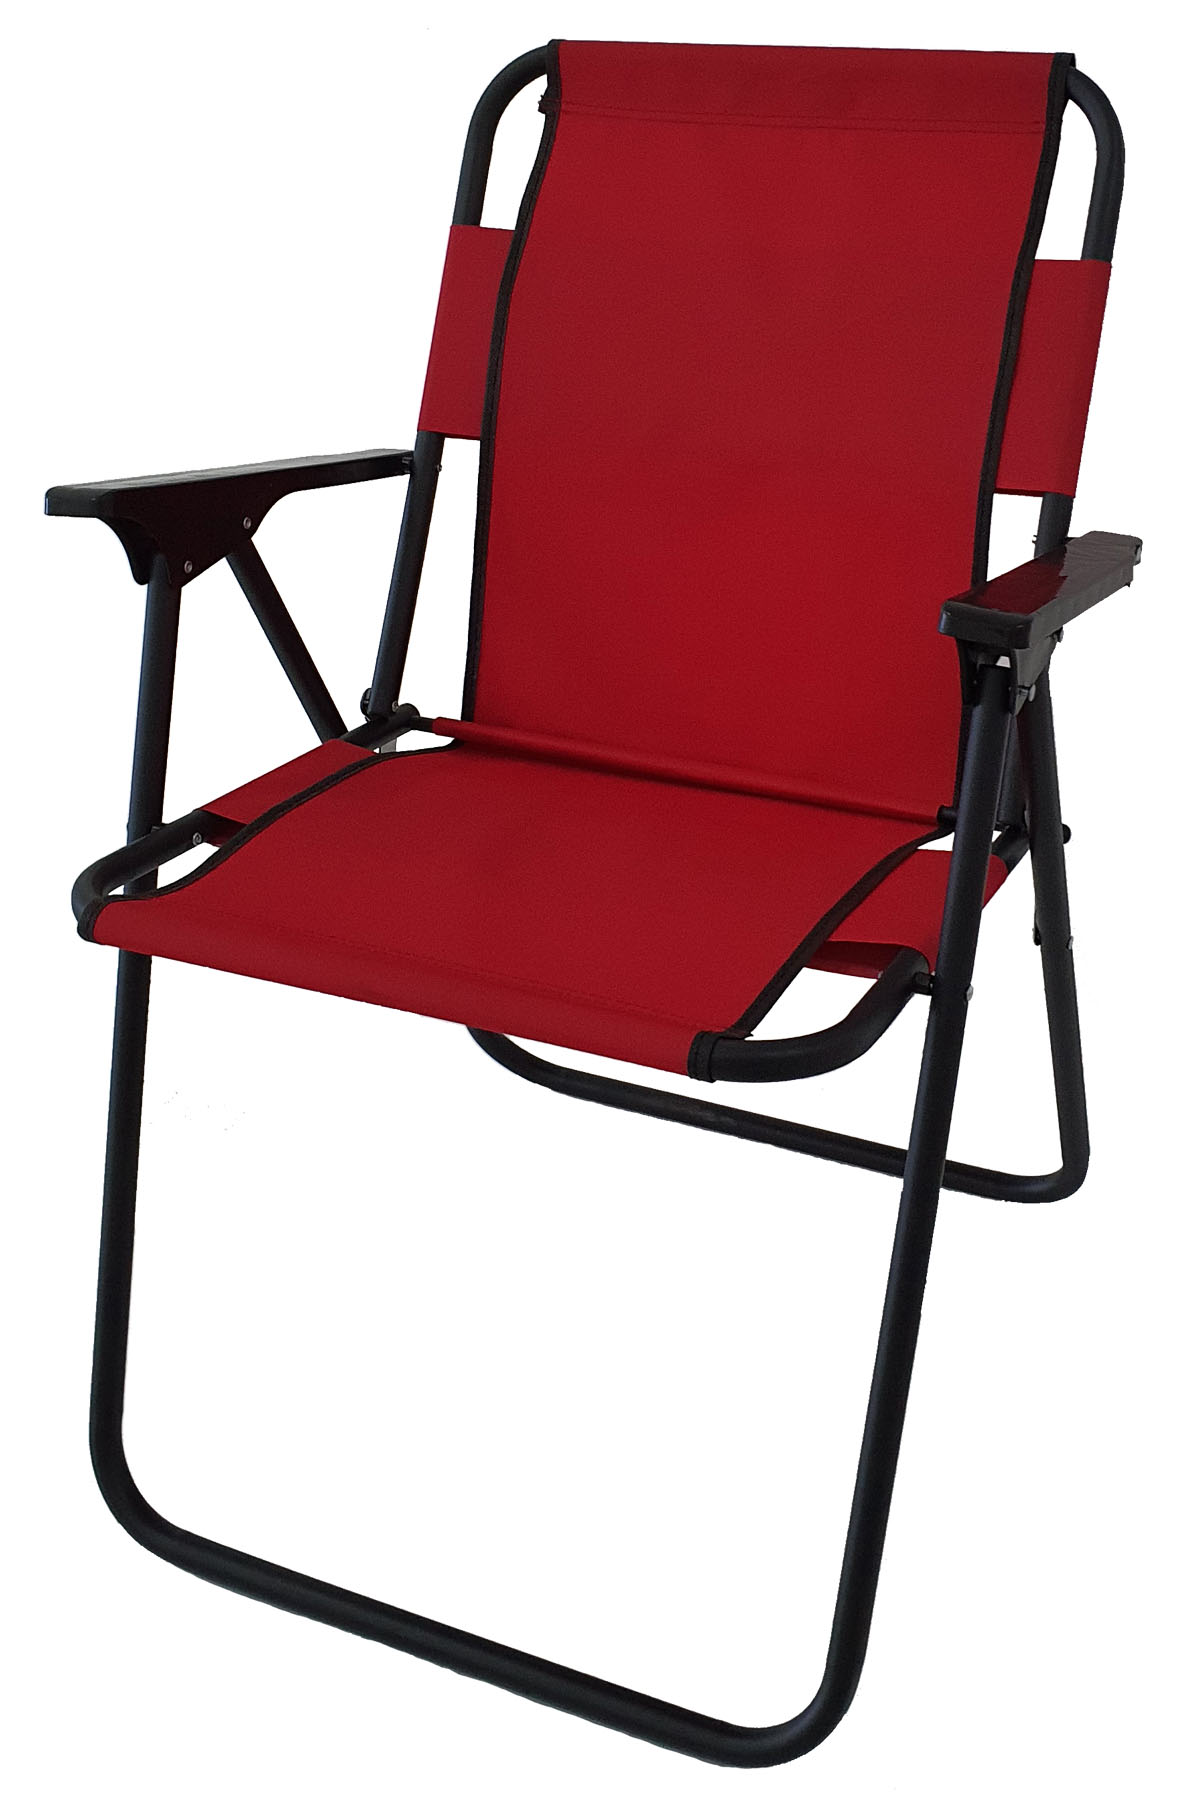 Bofigo Kamp Sandalyesi Katlanır Sandalye Piknik Sandalyesi Plaj Sandalyesi Kırmızı